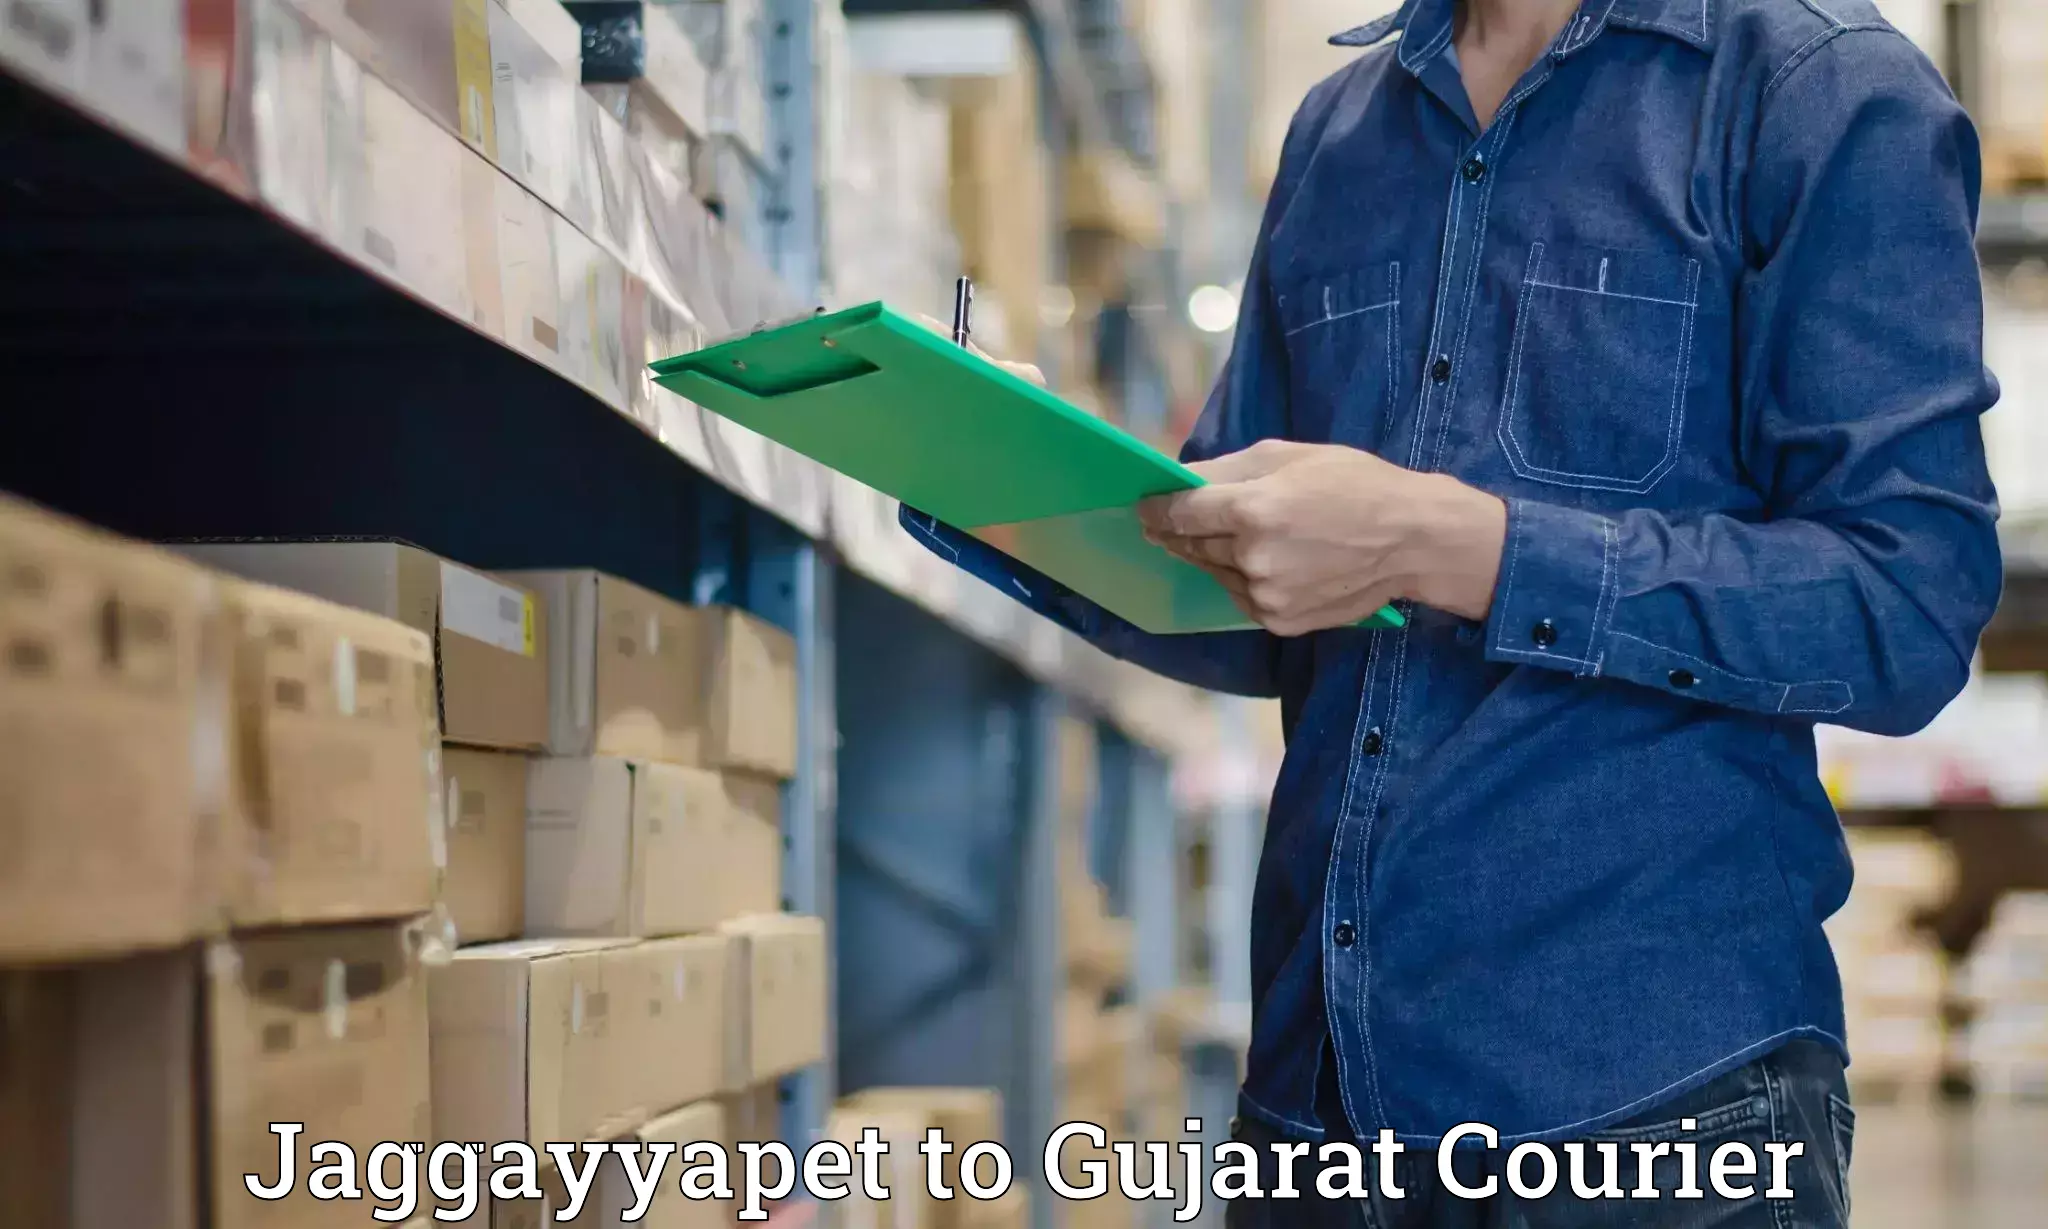 Digital courier platforms Jaggayyapet to Gujarat